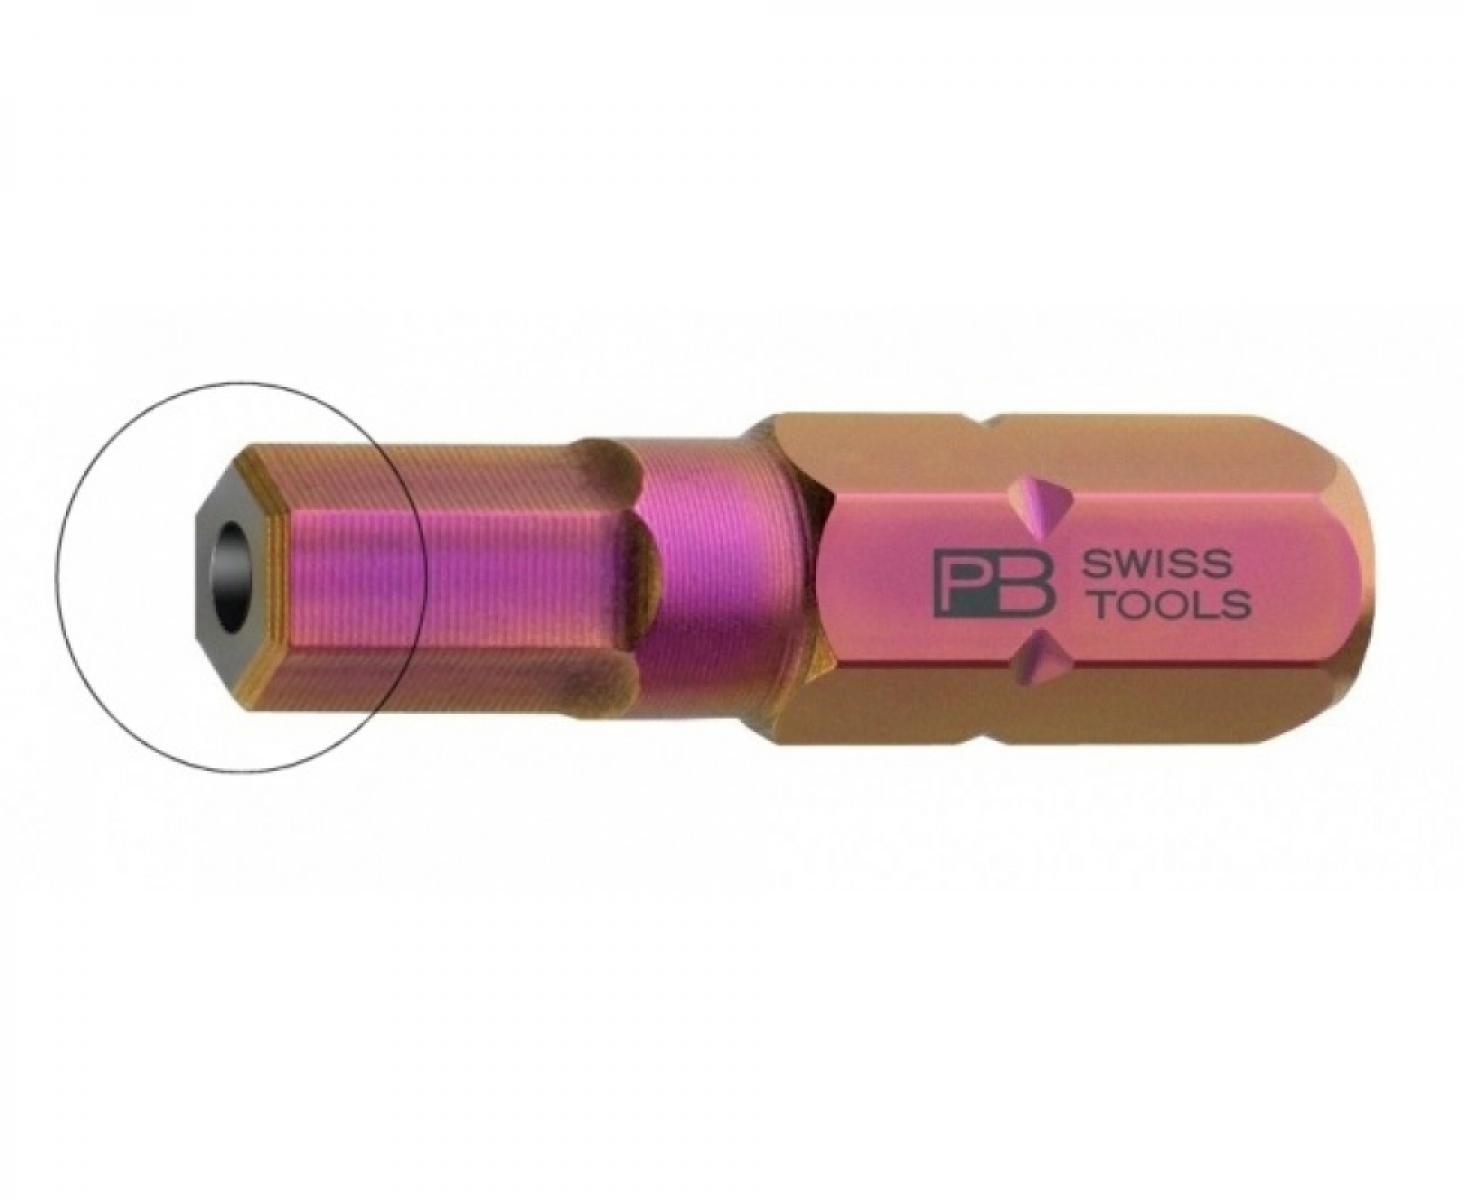 Бита HEX BO PrecisionBits C6,3 с внешним шестигранником 1/4 с отверстием PB Swiss Tools PB C6.210B/6 M6